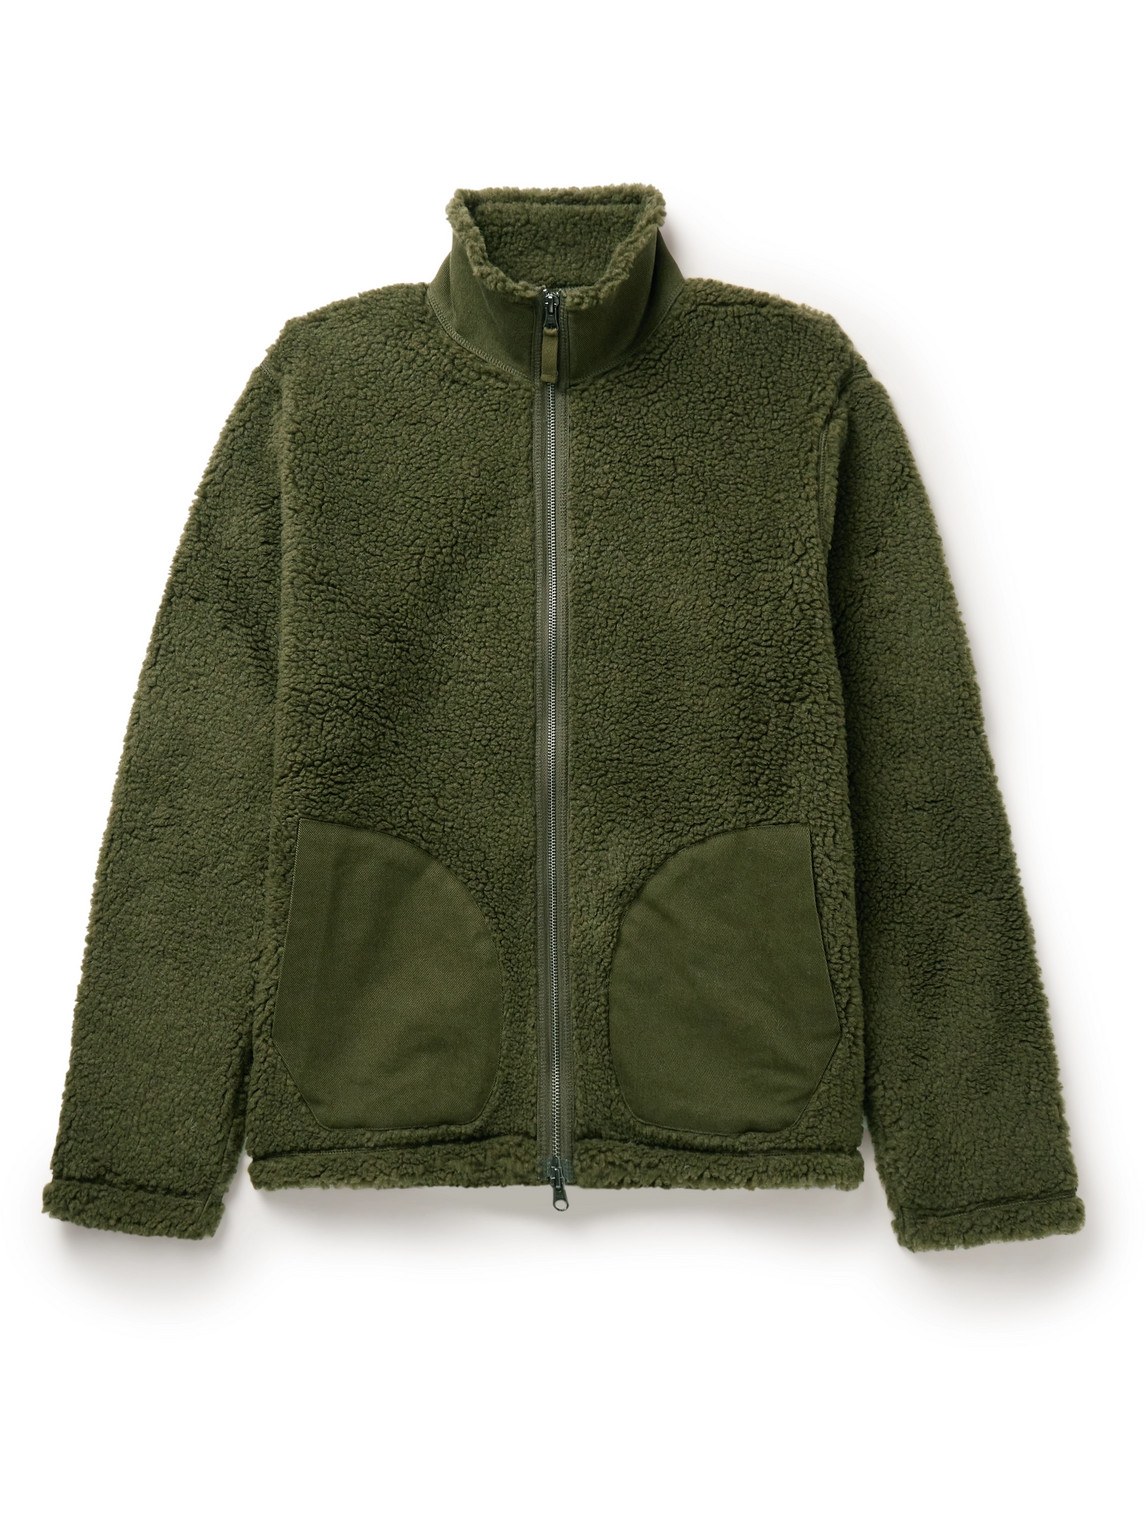 Hartford - Dorian Cotton Twill-Trimmed Fleece Jacket - Men - Green - L von Hartford